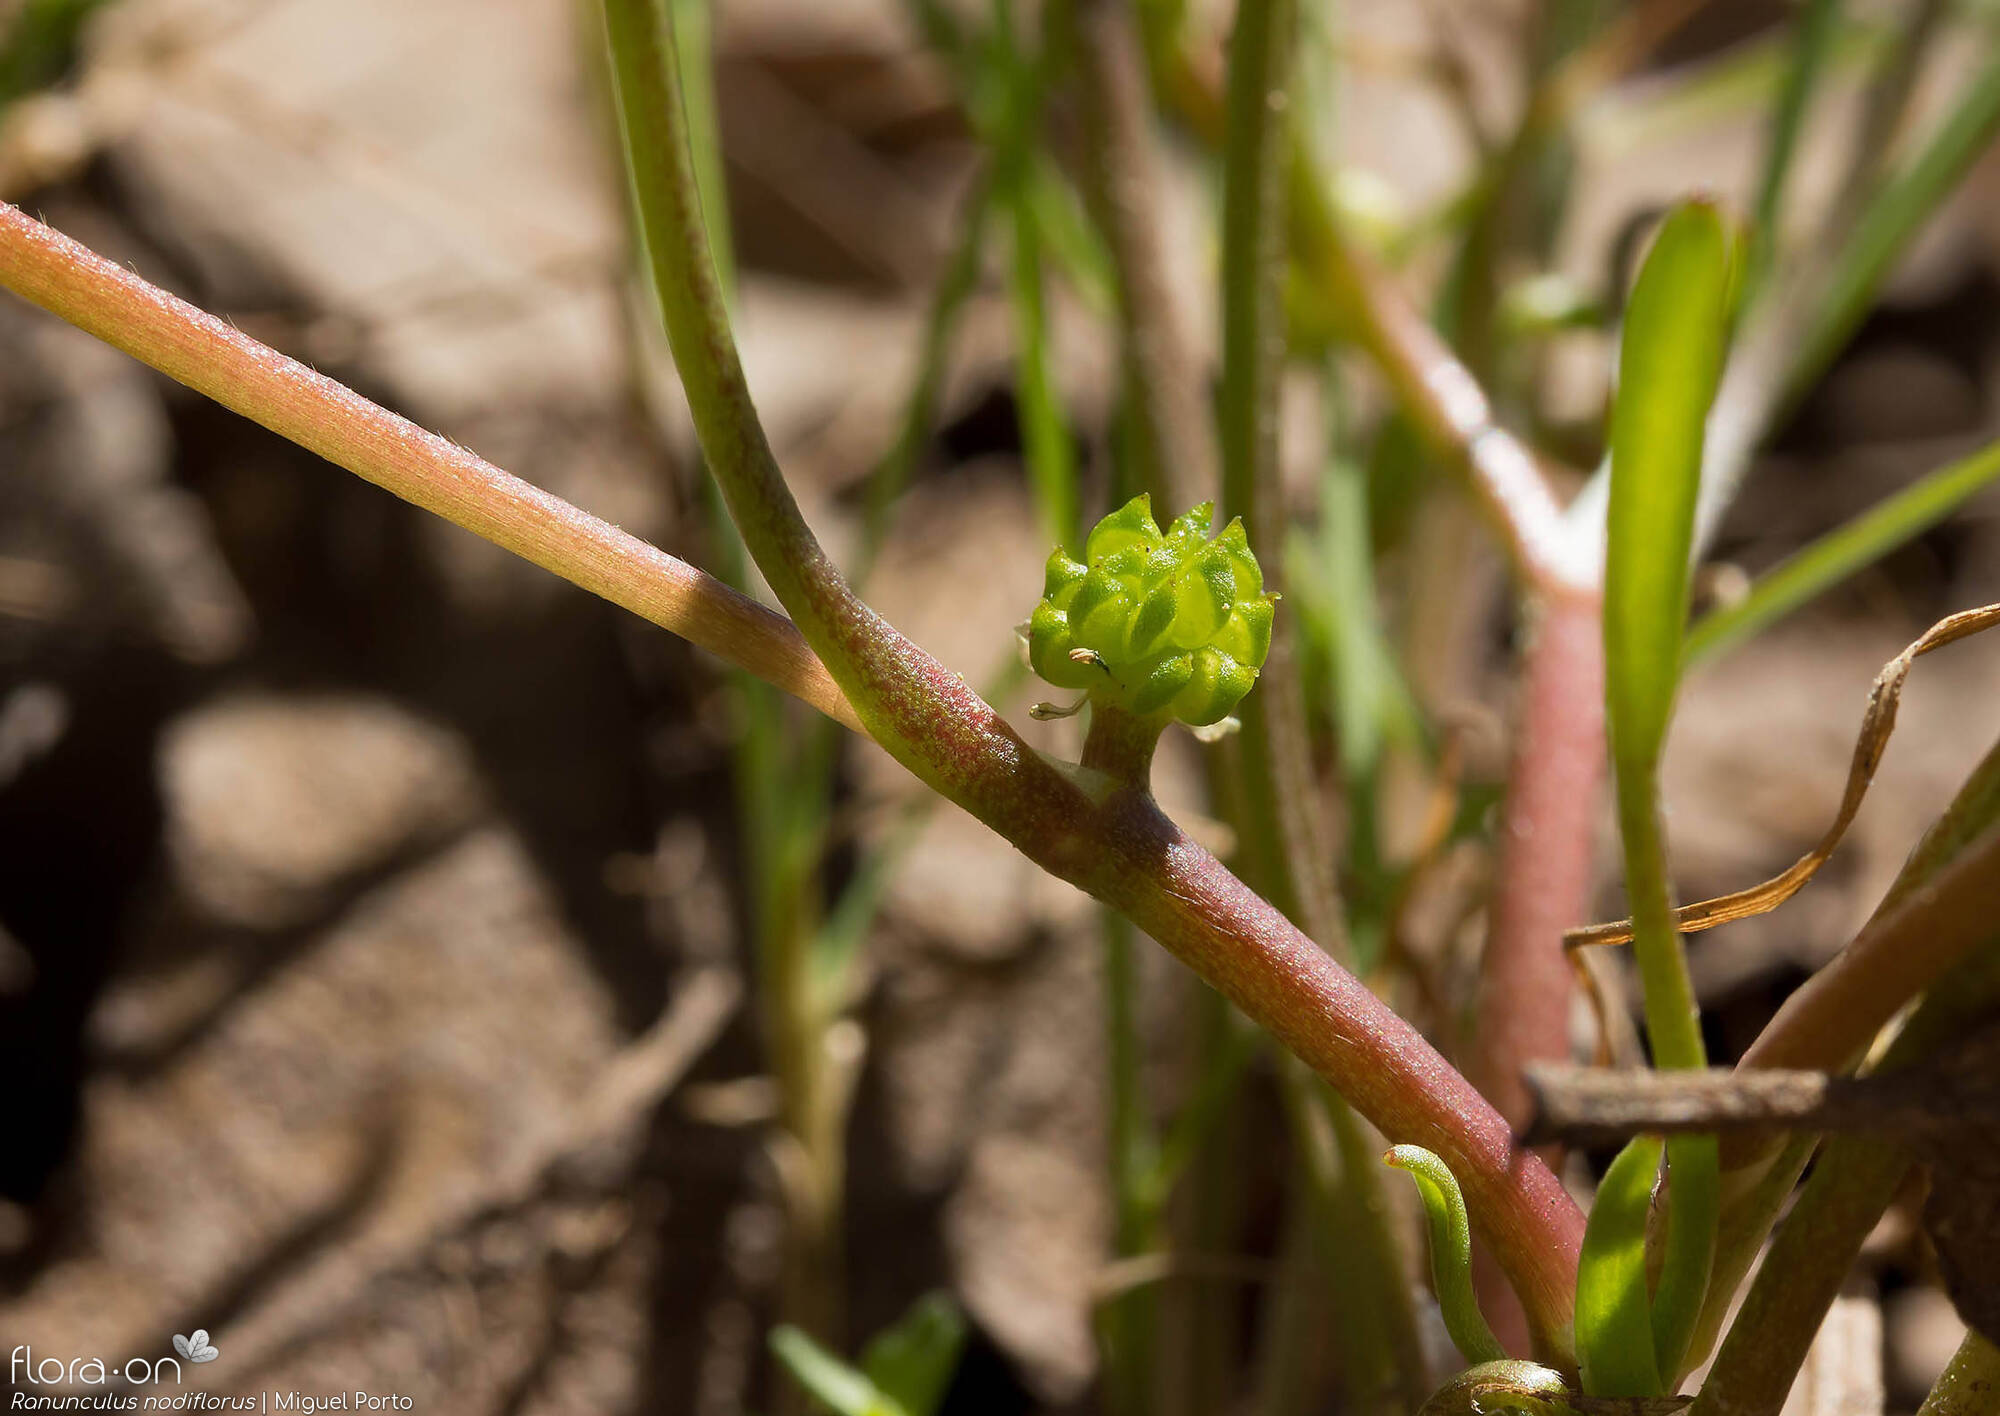 Ranunculus nodiflorus - Fruto | Miguel Porto; CC BY-NC 4.0